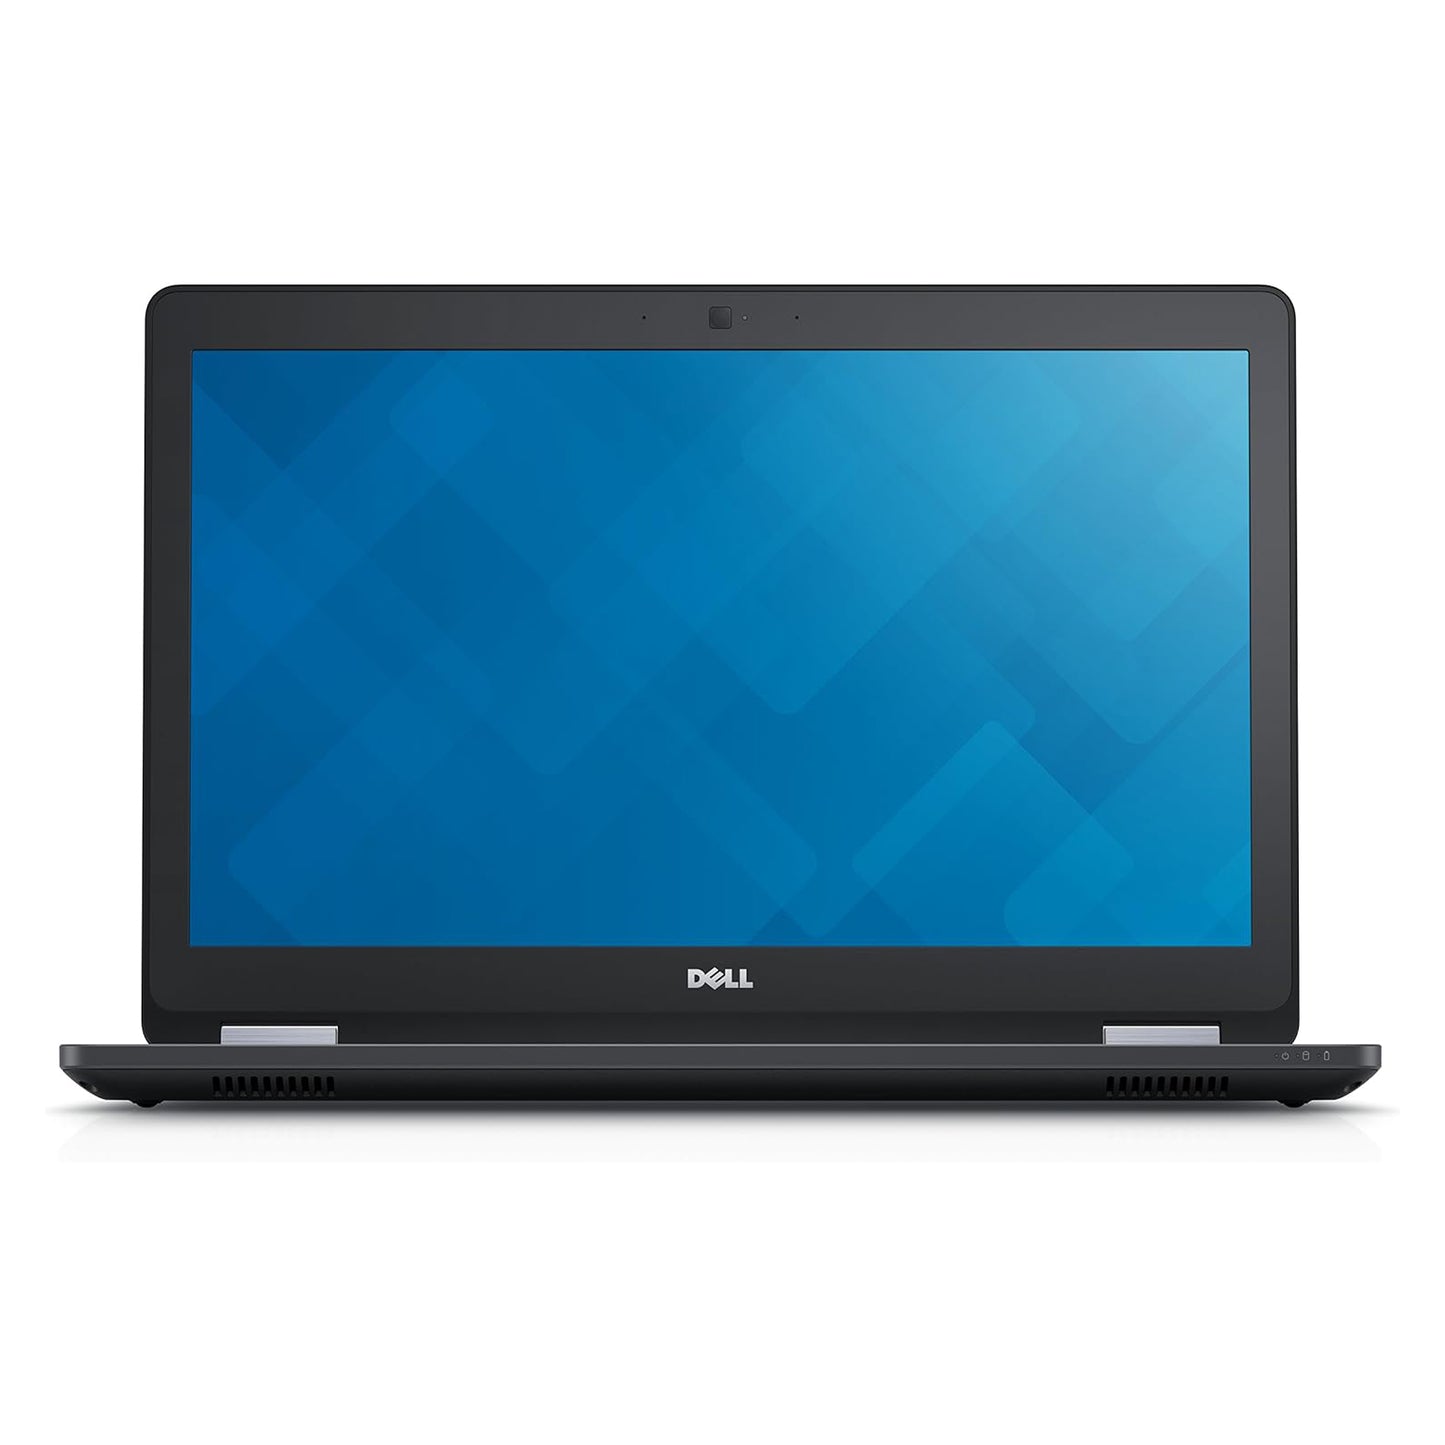 Dell Latitude E5570 Core i7-6600u Radeon R7 M360 15.6" Laptop Offers (Open Box)